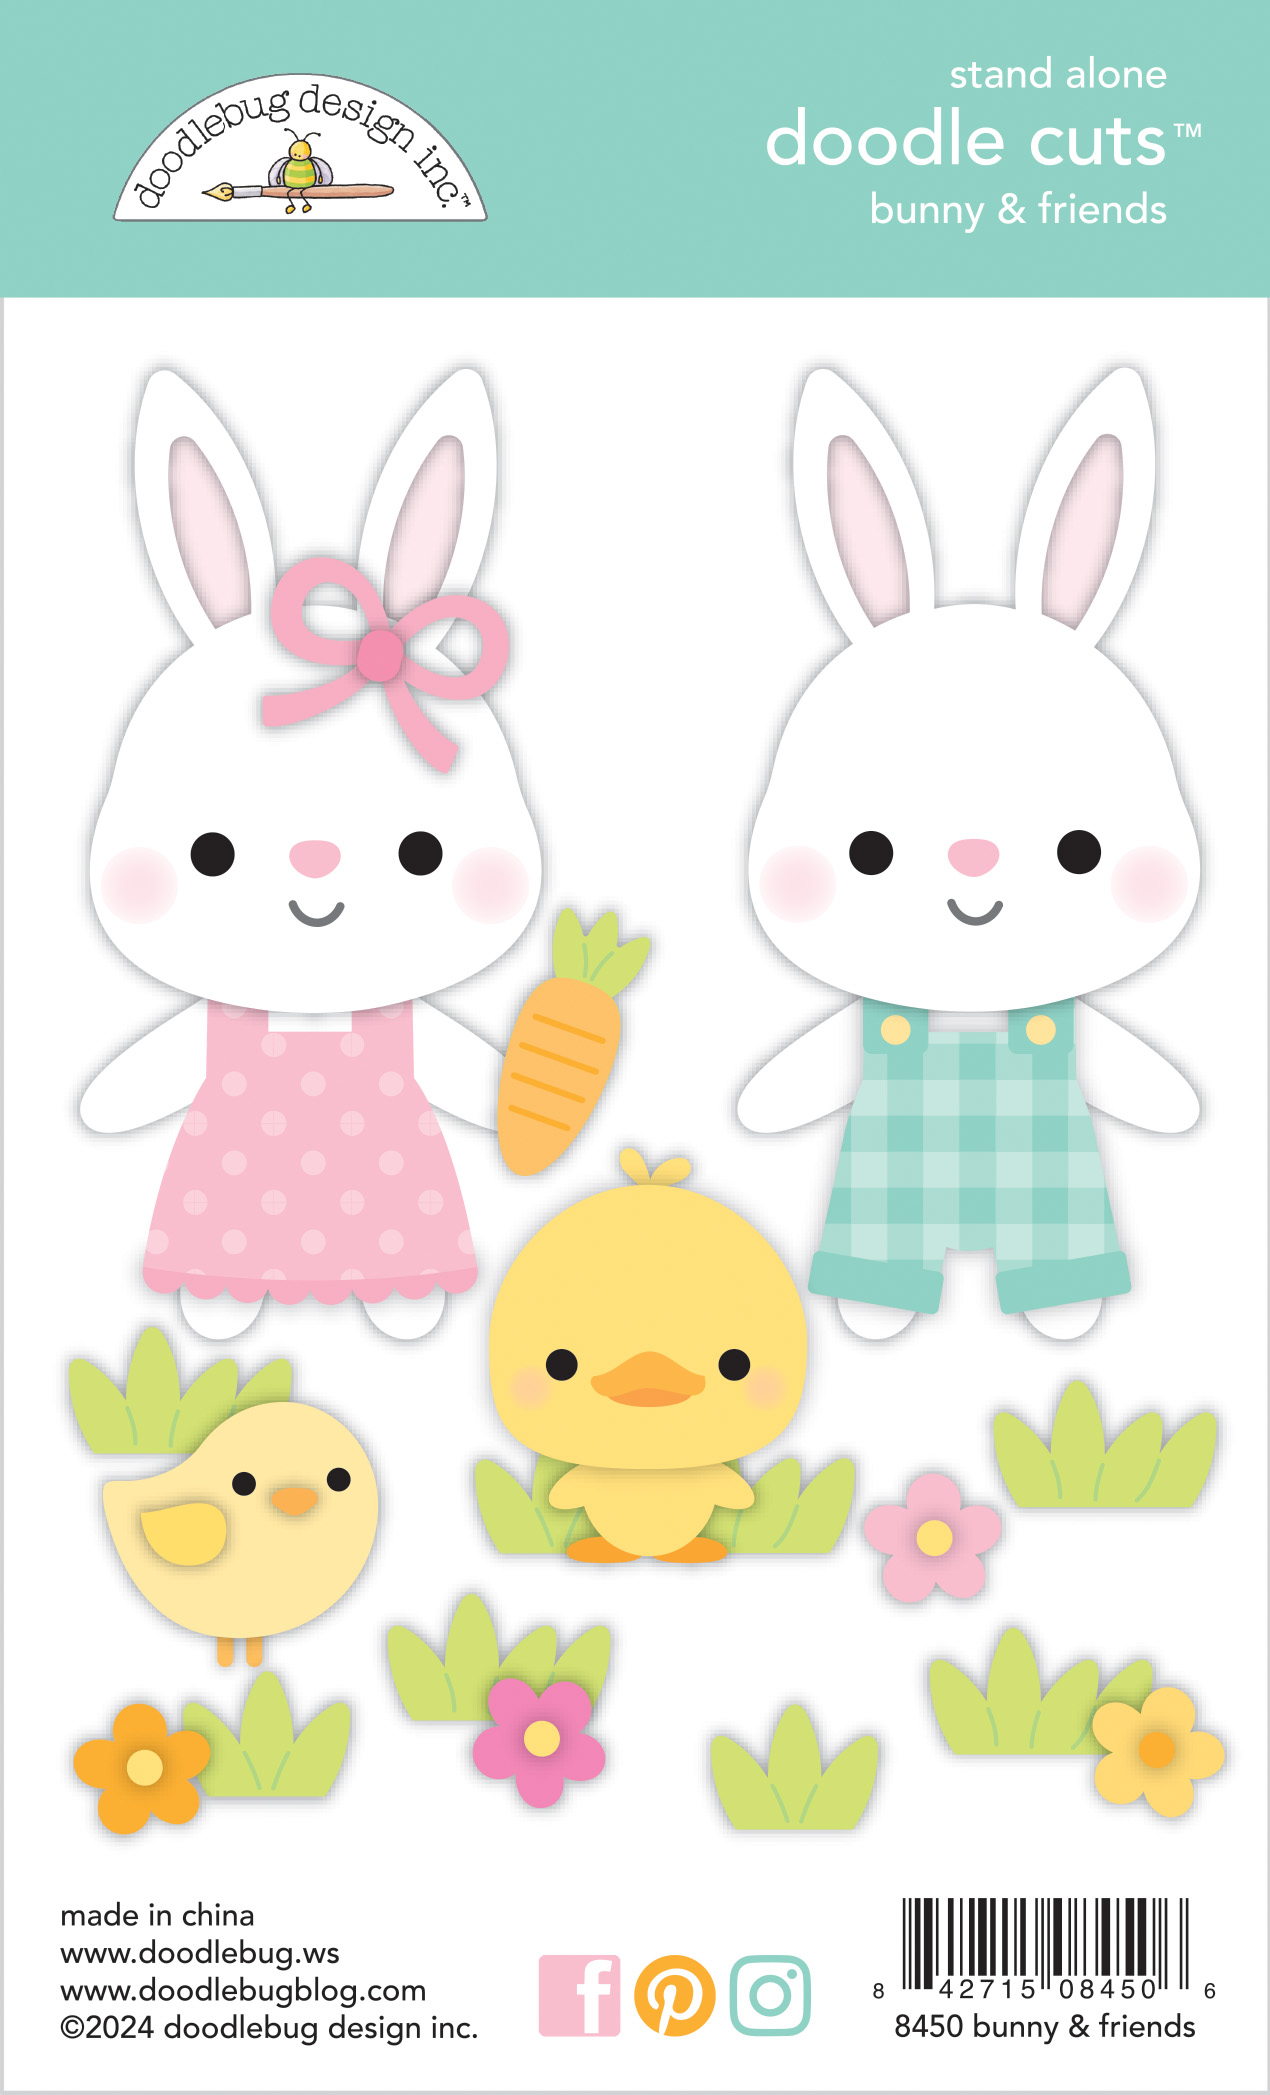 Doodlebug Bunny & Friends Doodle Cuts